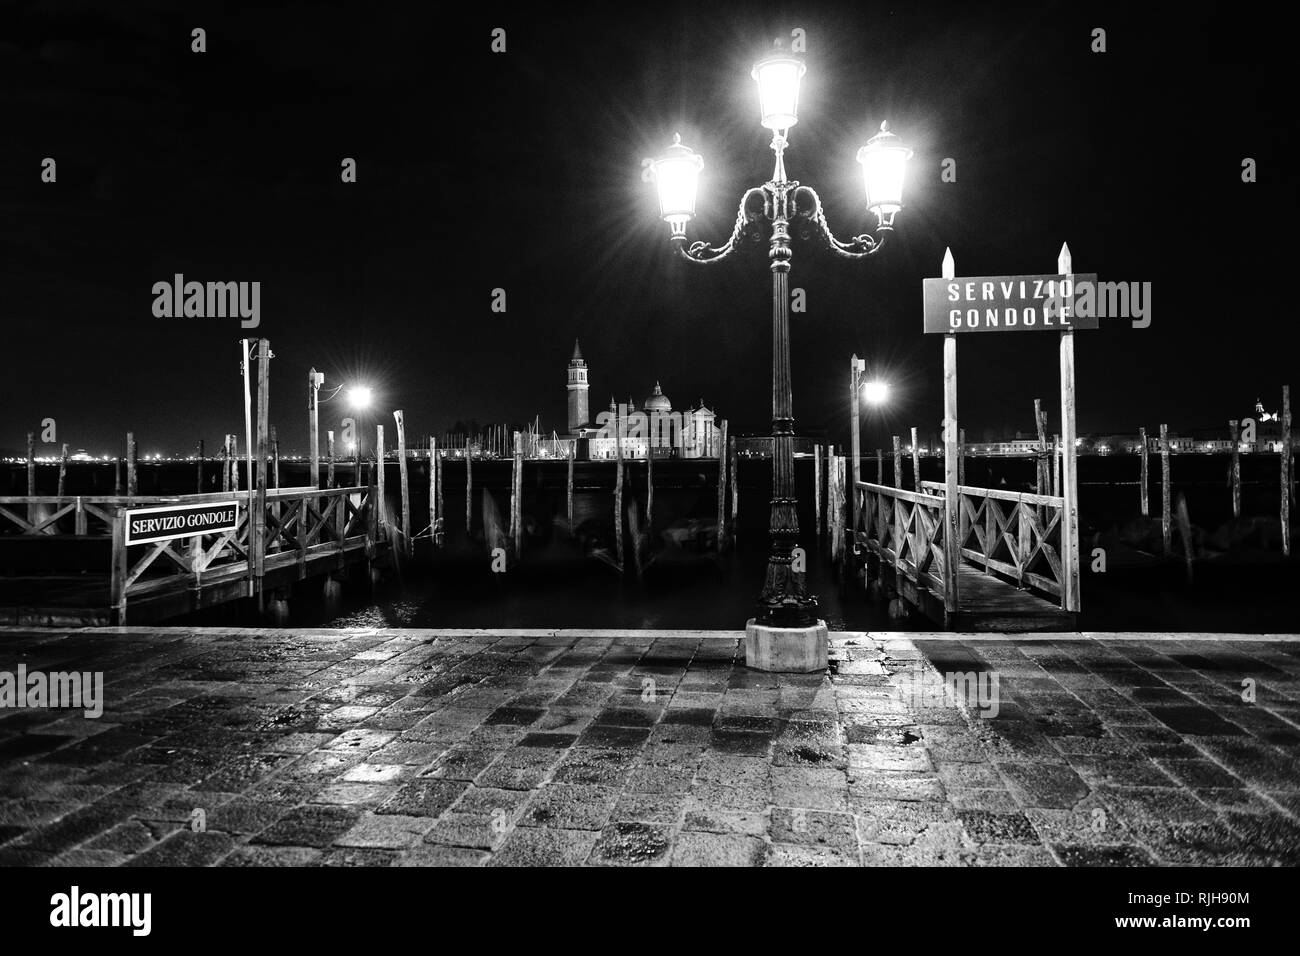 Servizio Gondole, estación de servicio, paseo en góndola Riva degli Schiavoni, Patrimonio Mundial de la UNESCO, Venecia, Italia, en el sur de Europa Foto de stock